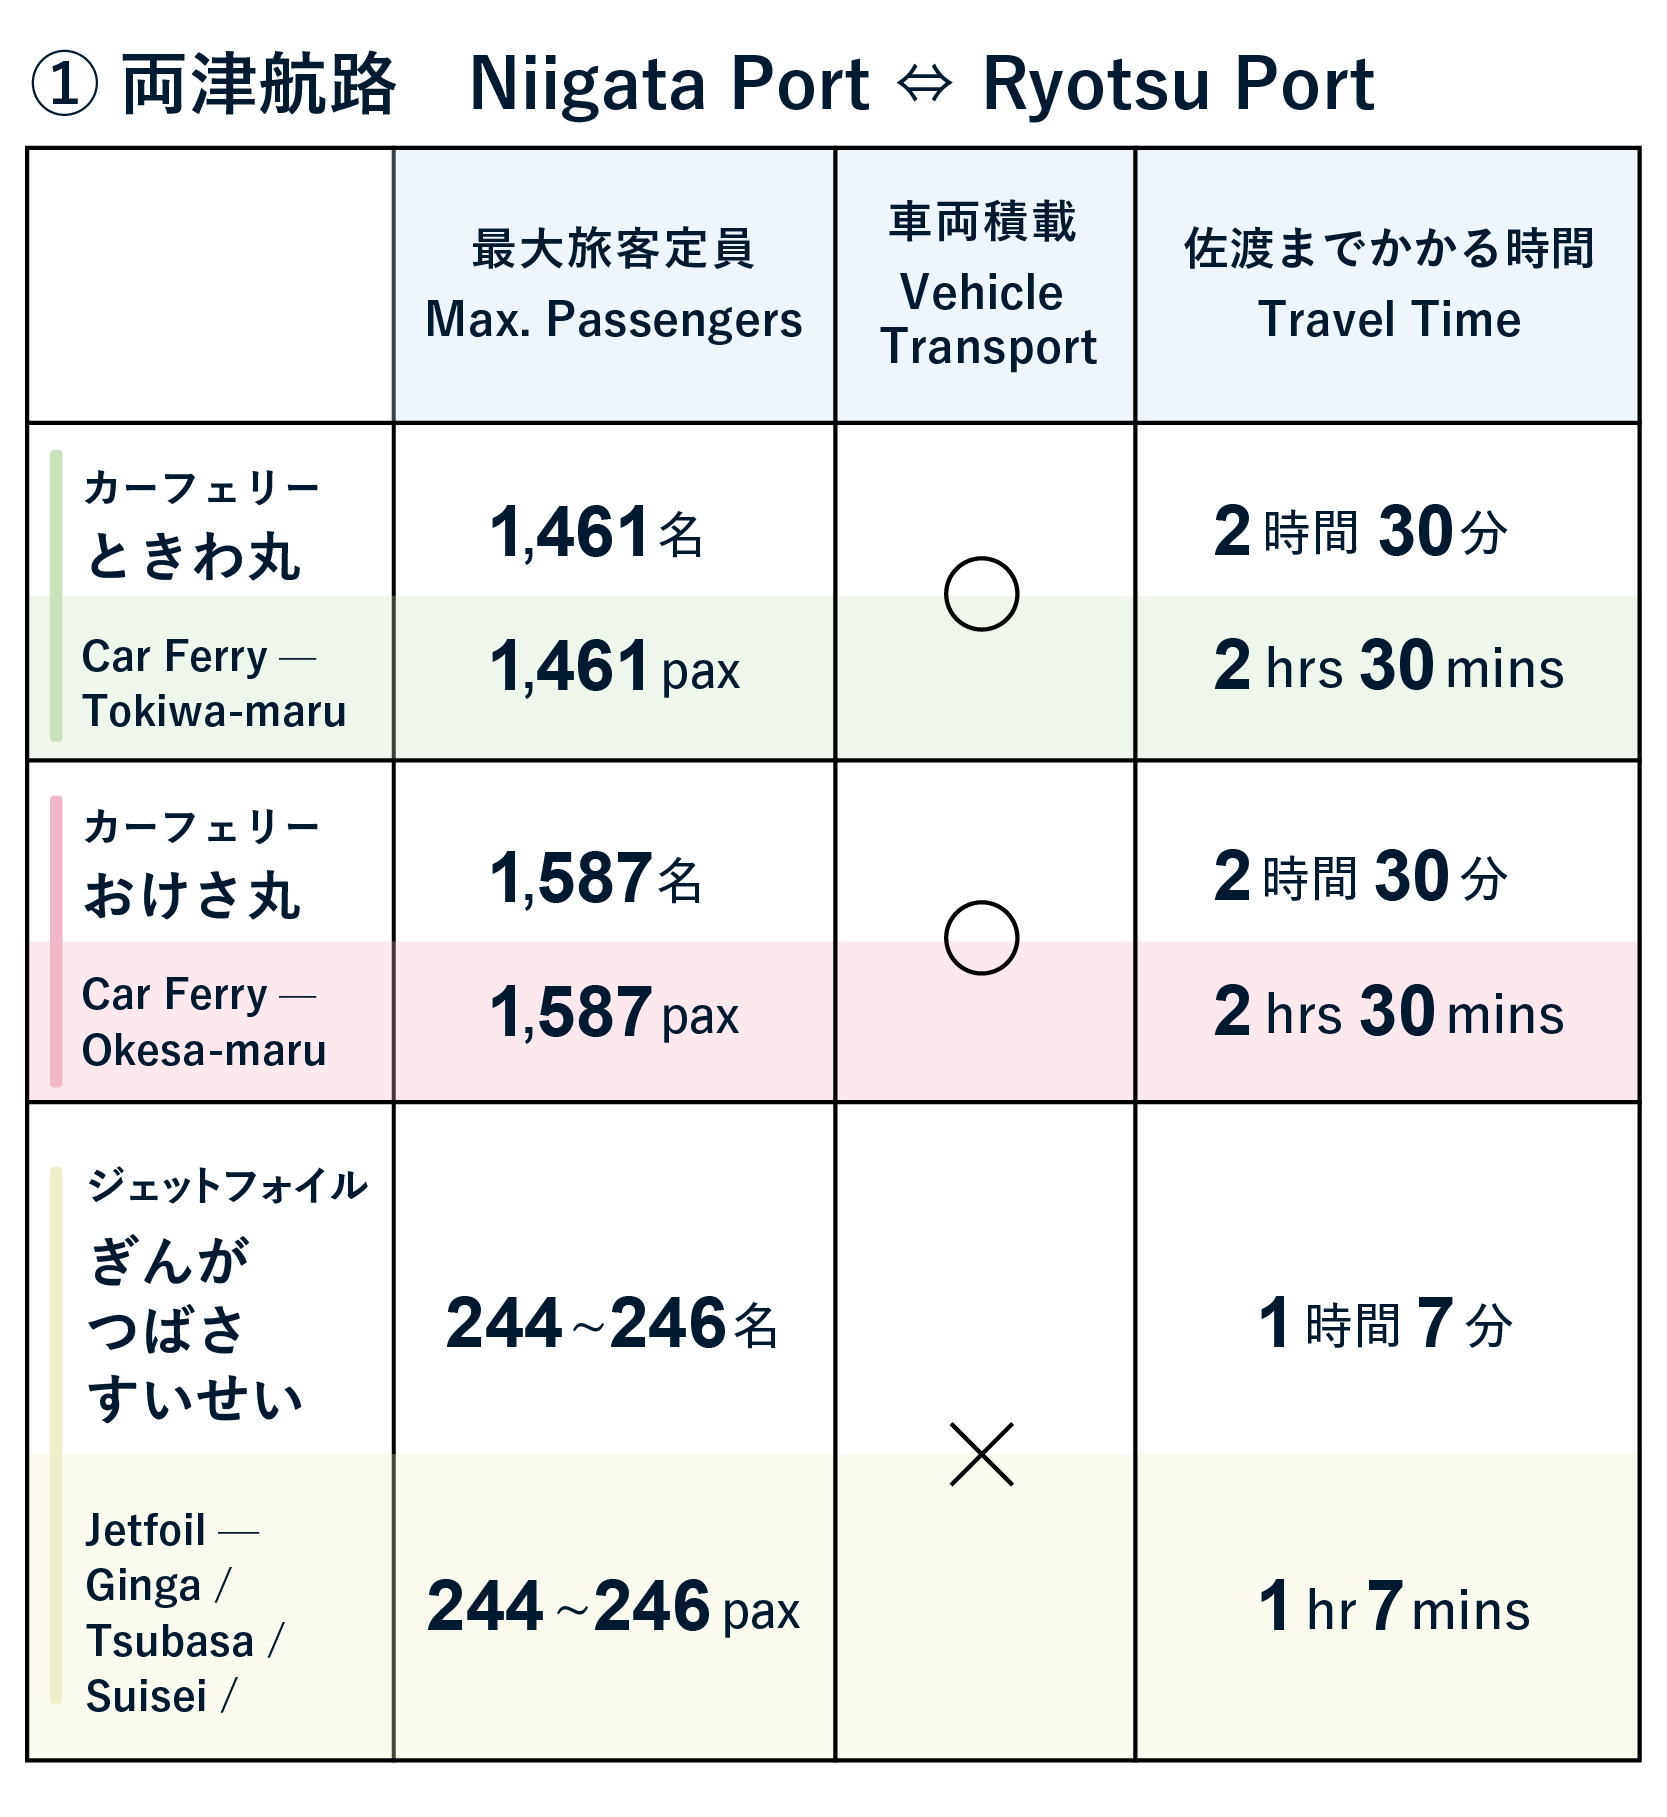 Travel to Sado (Niigata Port to Ryotsu Port)